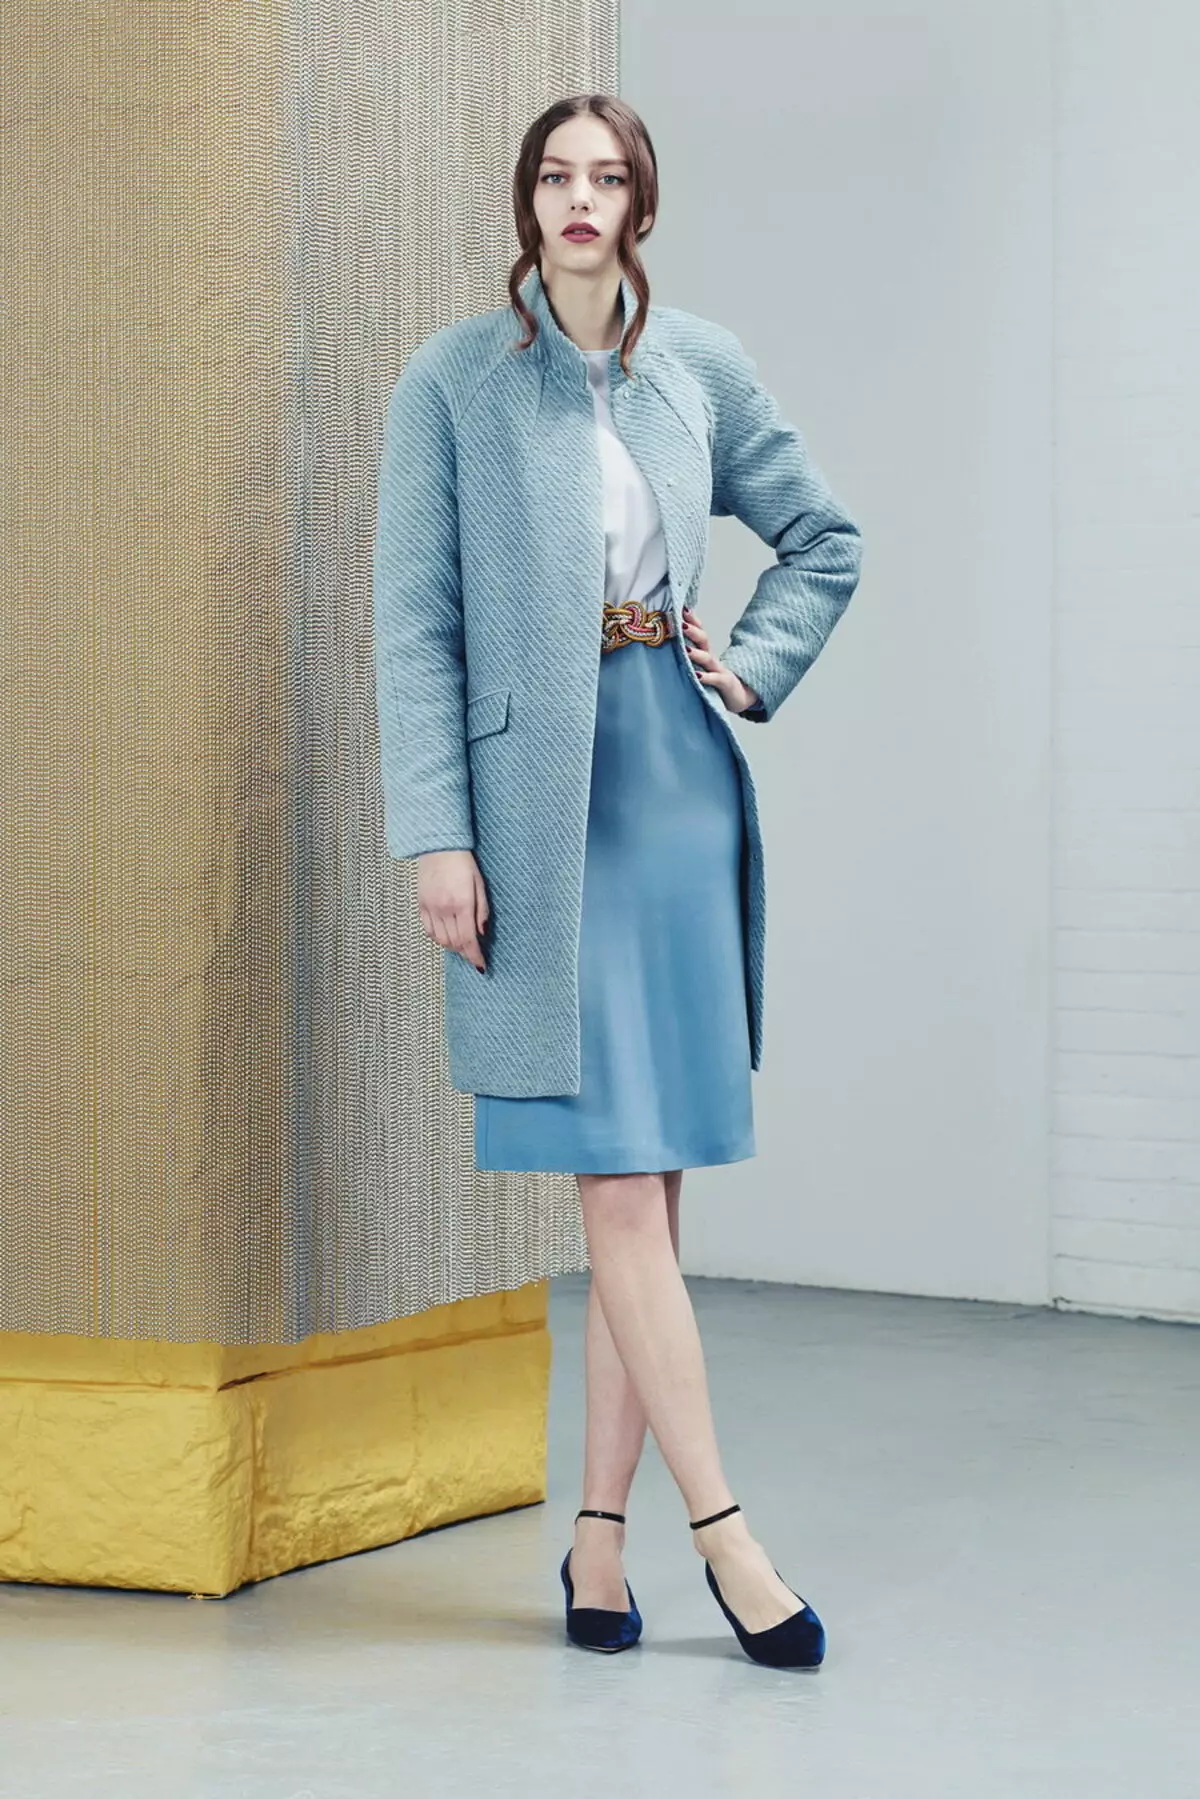 Áo khoác nữ mùa xuân 2021 (356 ảnh): Từ các nhà sản xuất, mô hình, kiểu dáng và phong cách của Nga, quilted, ngắn, giảm xóc, da 623_319